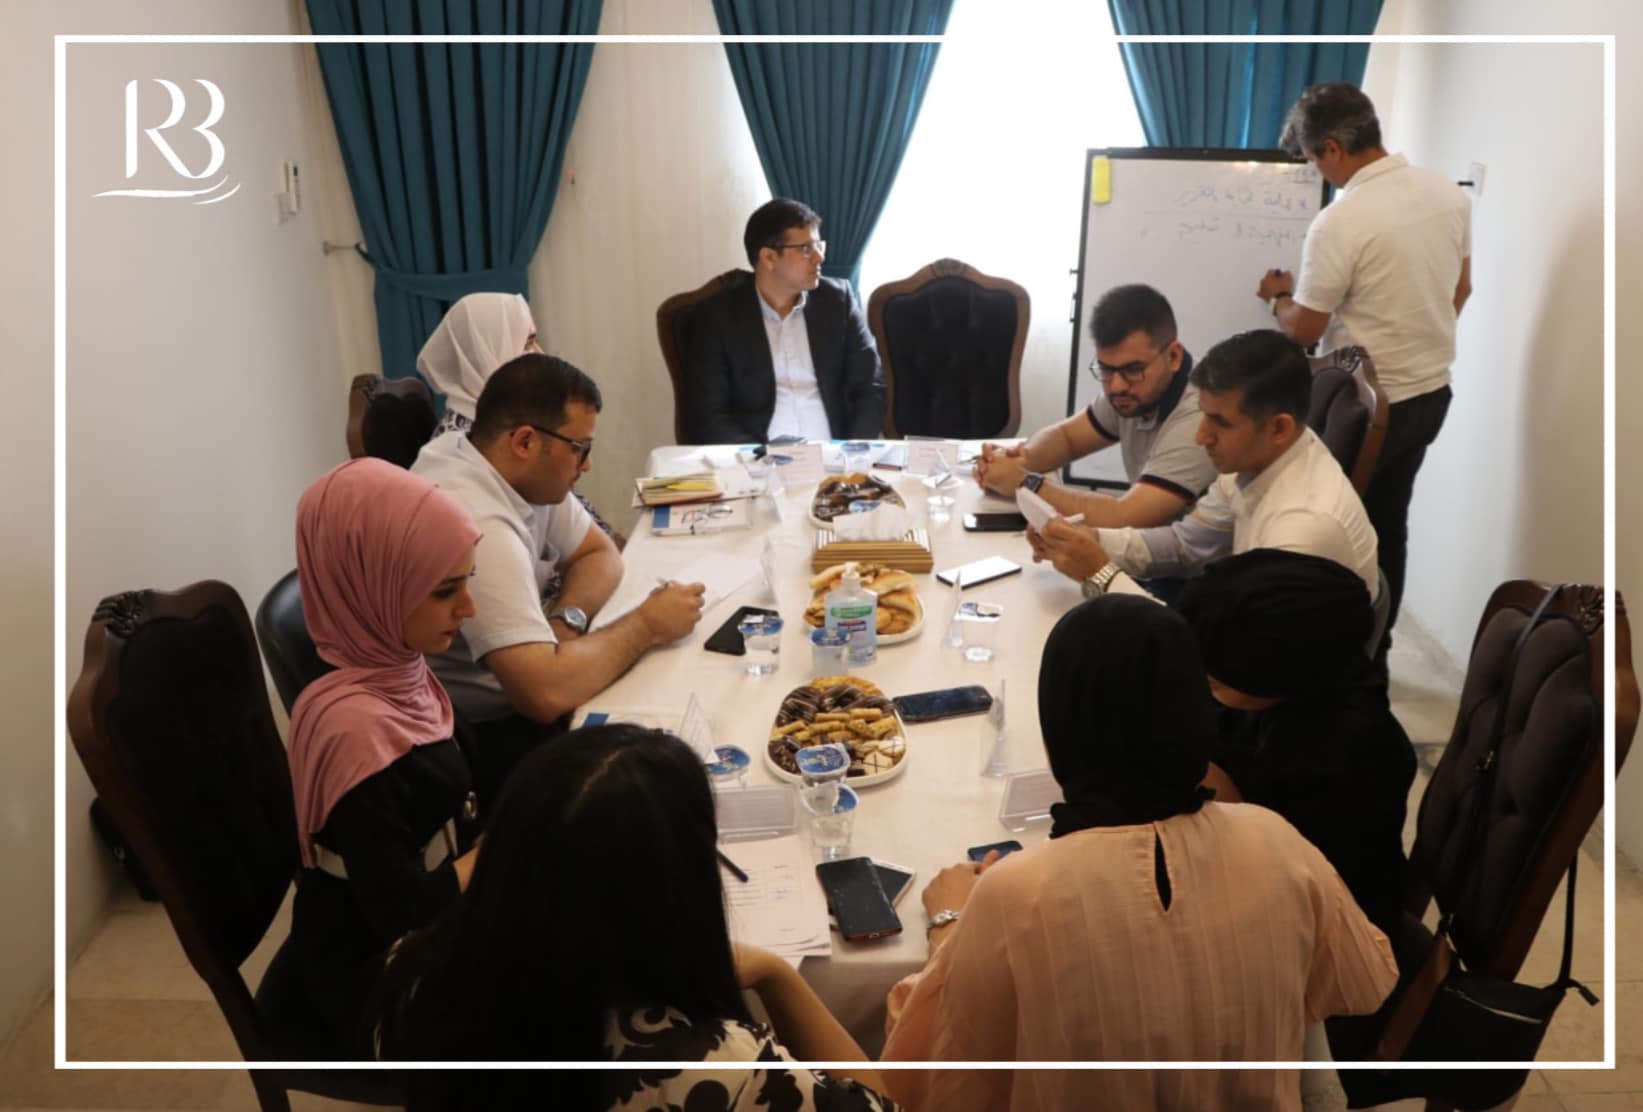 عقد الاجتماع التشاوري الدوري الخاص ببحث خطوات المشروع والمستجدات والمعطيات الخاصة بمشروع دعم اعادة النظر بتقييم الدستور العراقي لعام 2005